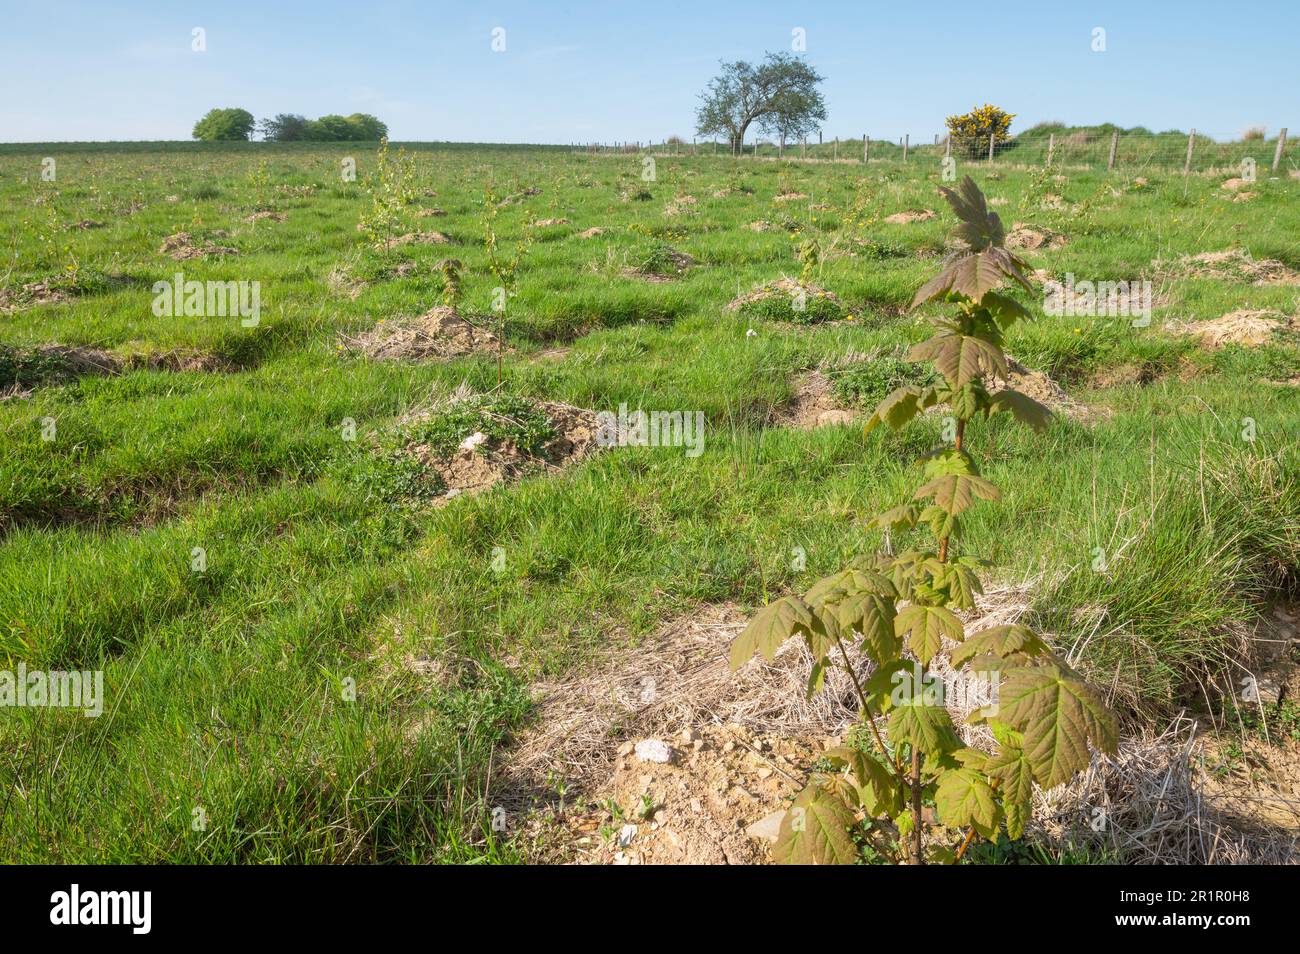 Reihen von Sycamore (Acer pseudoplatanus) und Silberbirke, Betula pendula, ein Jahr nach dem Anpflanzen auf Banc Farm, Brechfa, Carmarthenshire, Wales, Vereinigtes Königreich Stockfoto